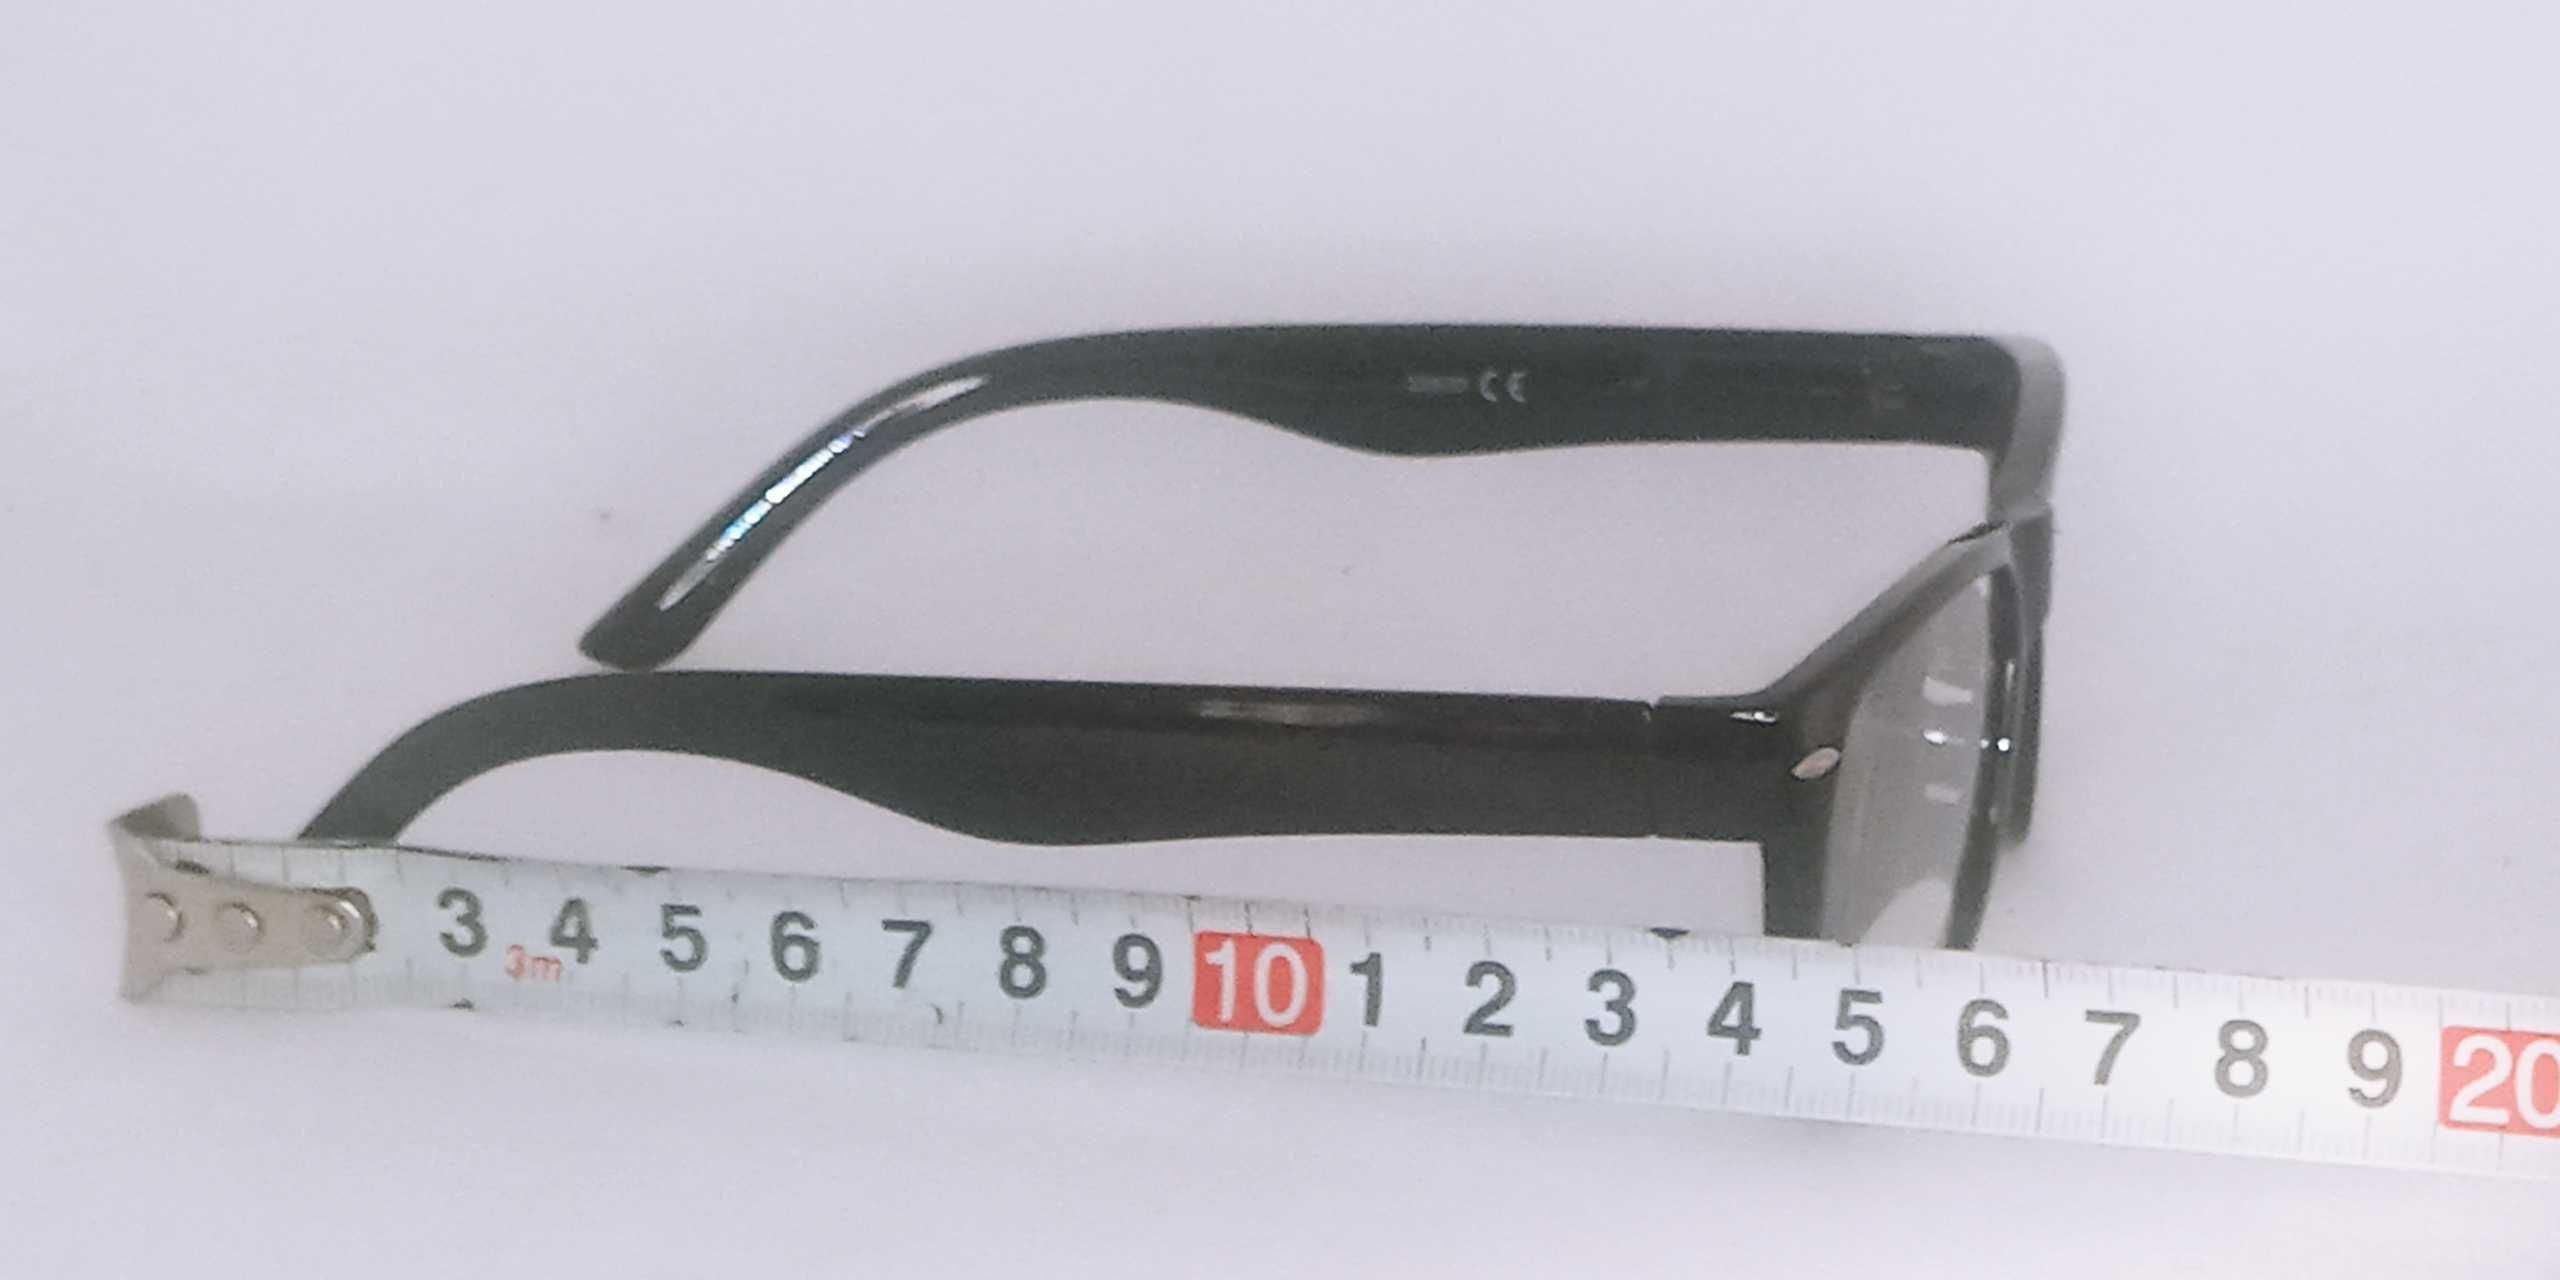 Okulary plusy do czytania korekcyjne + 5,5 dioptrie